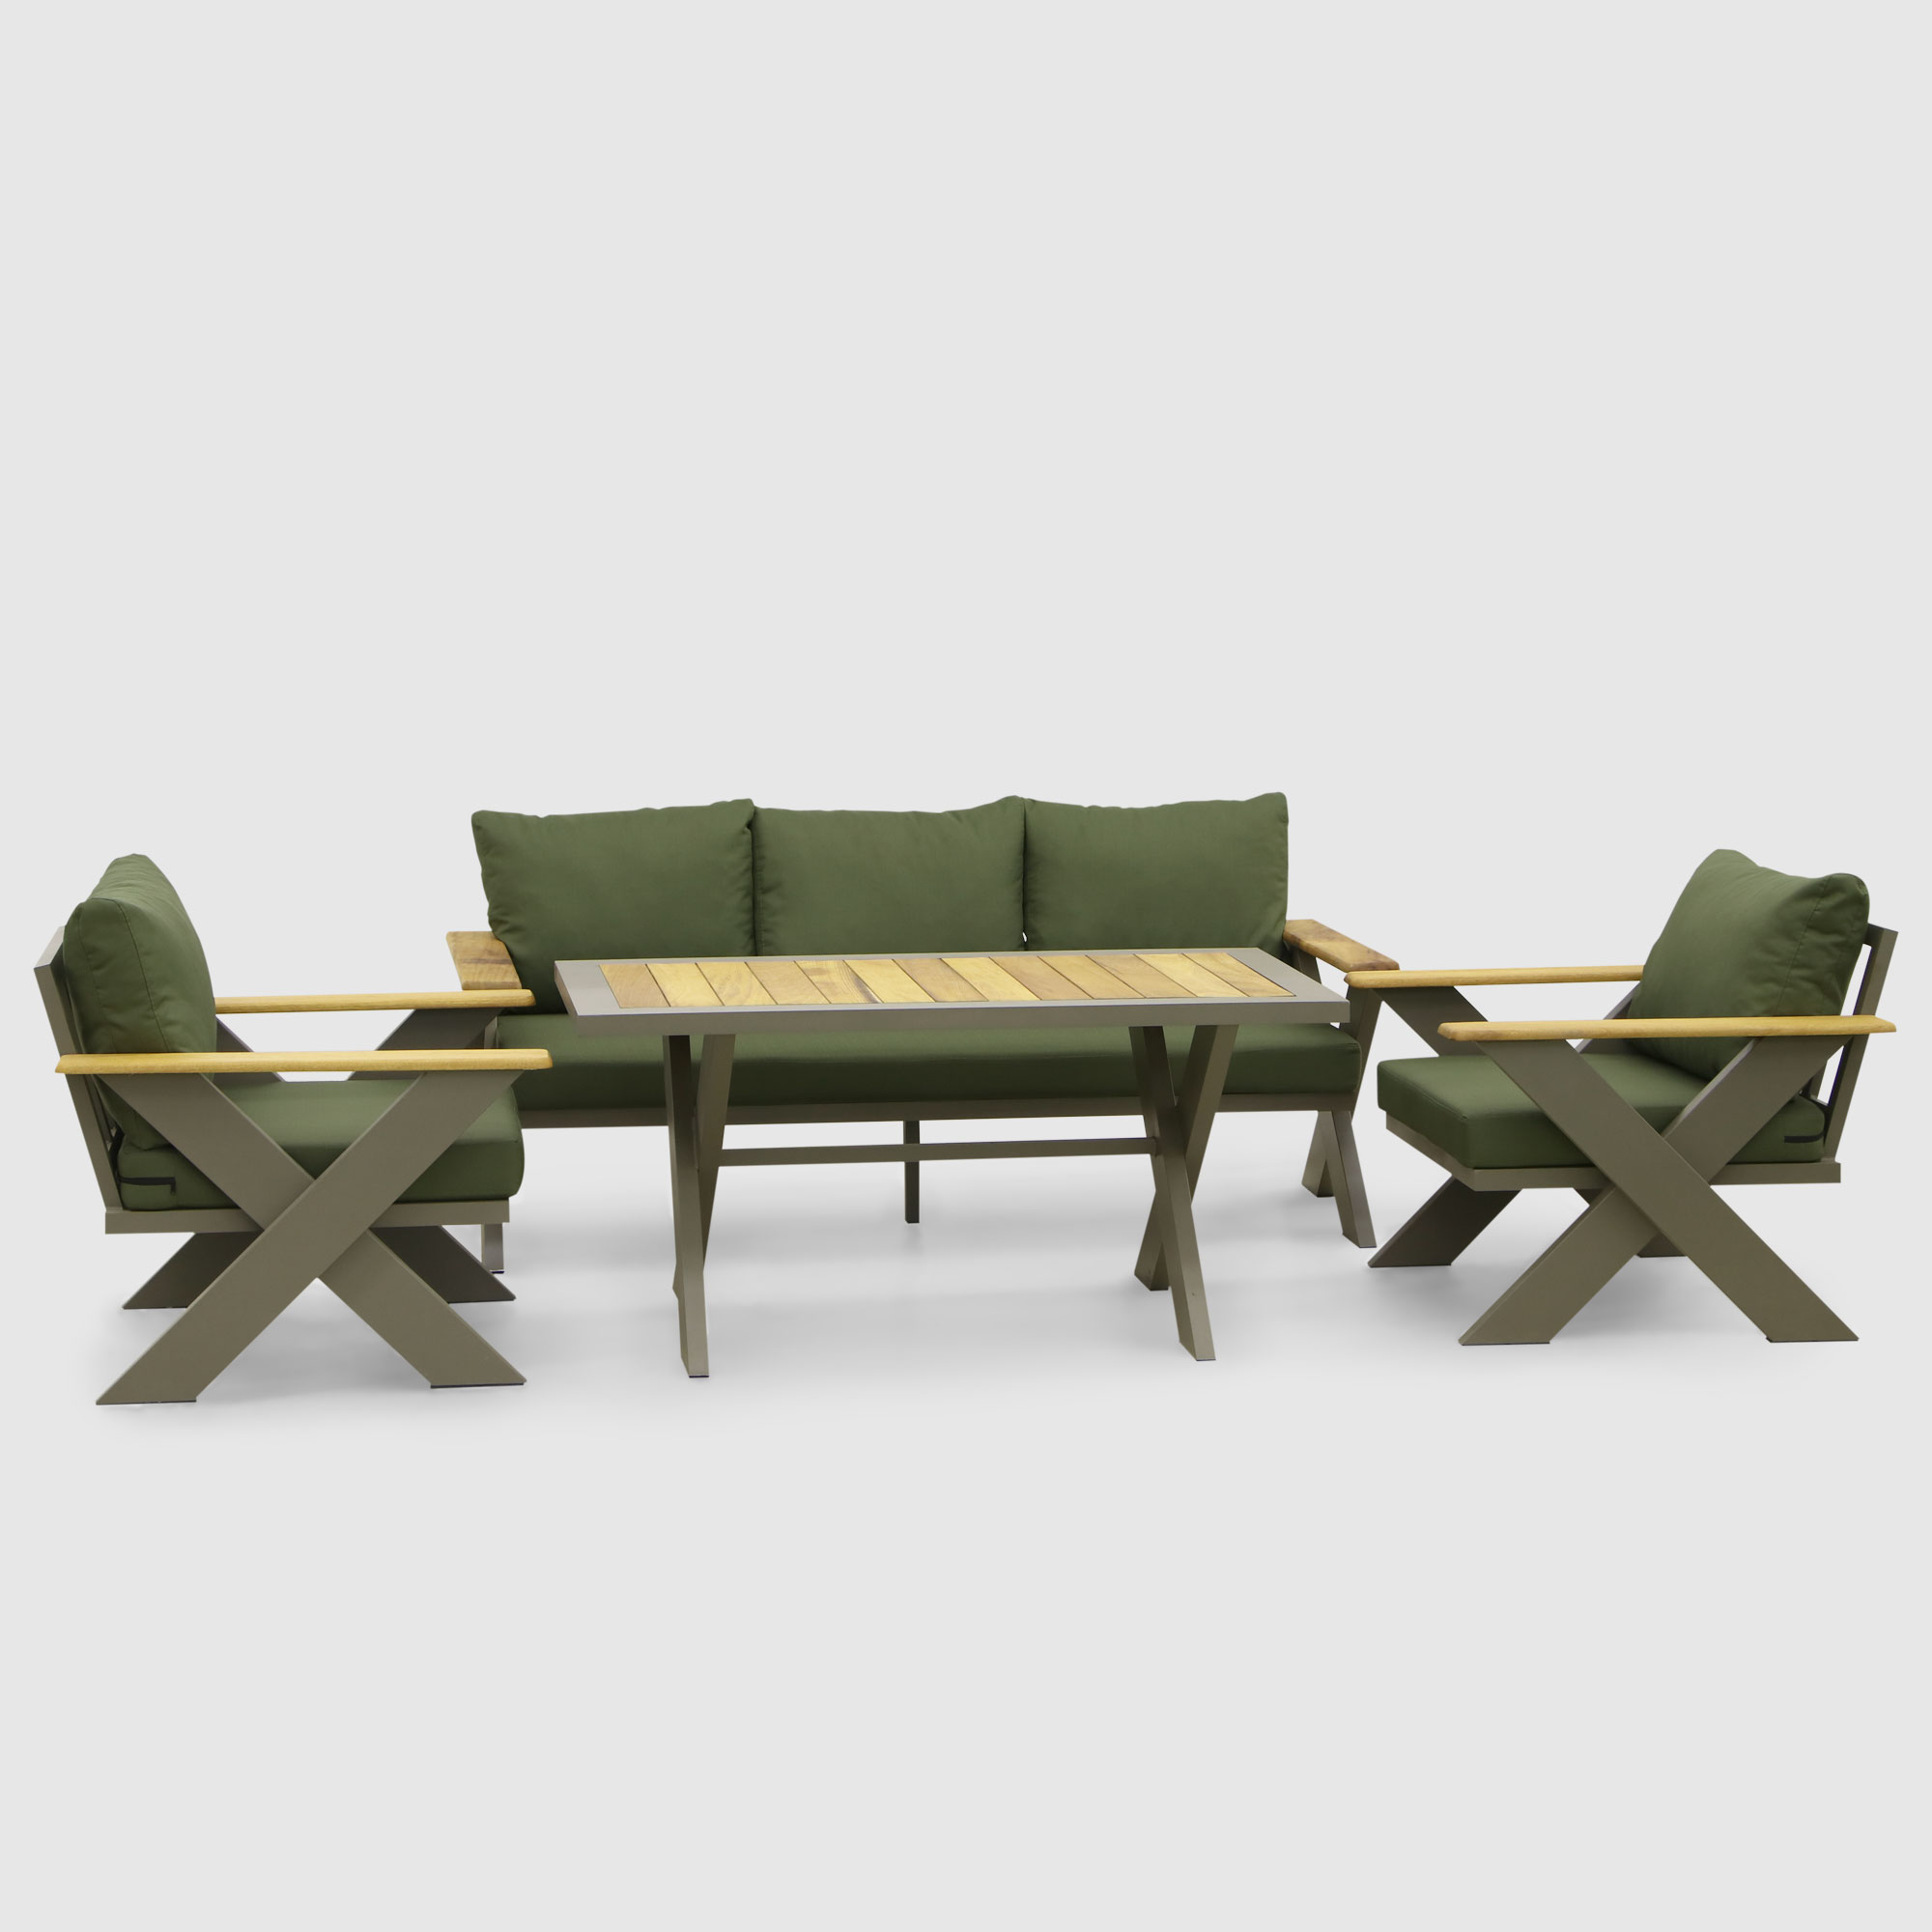 Комплект мебели Emek garden Toledo зеленый 4 предмета, цвет оливковый, размер 170х80х90